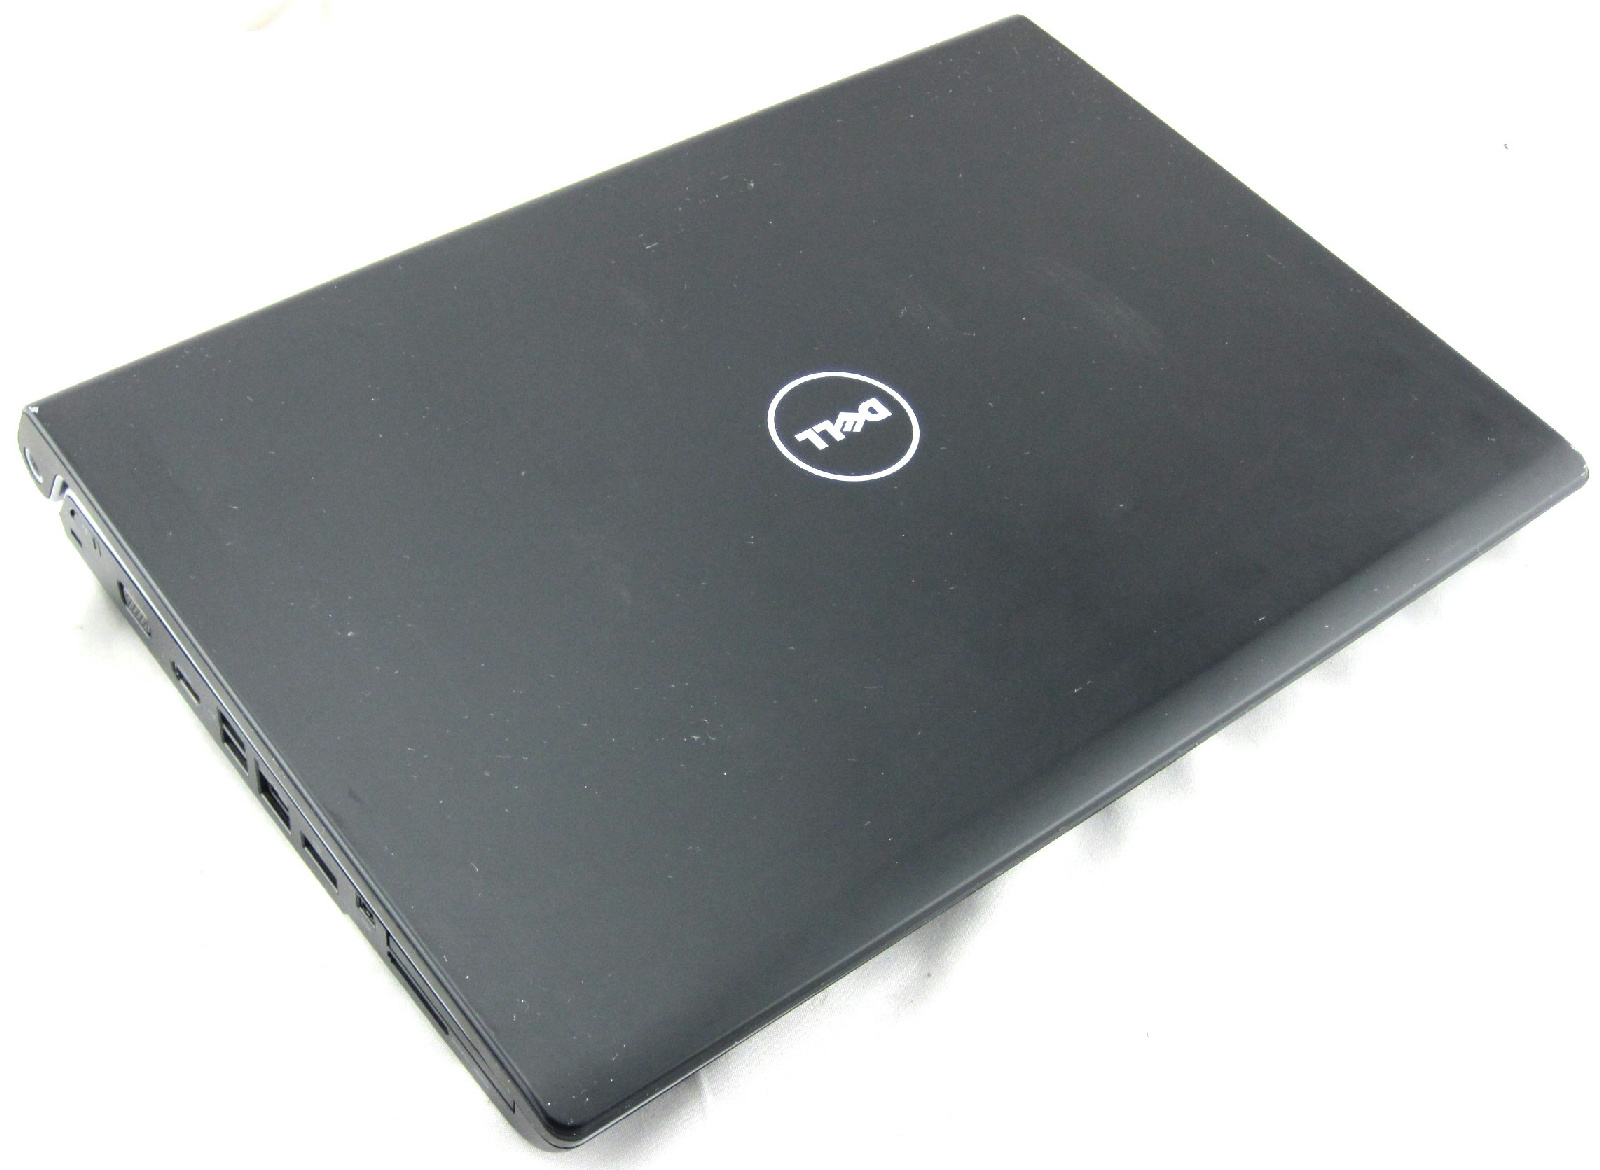 Dell Studio 1737 17" Notebook Intel Pentium Dual-Core ...